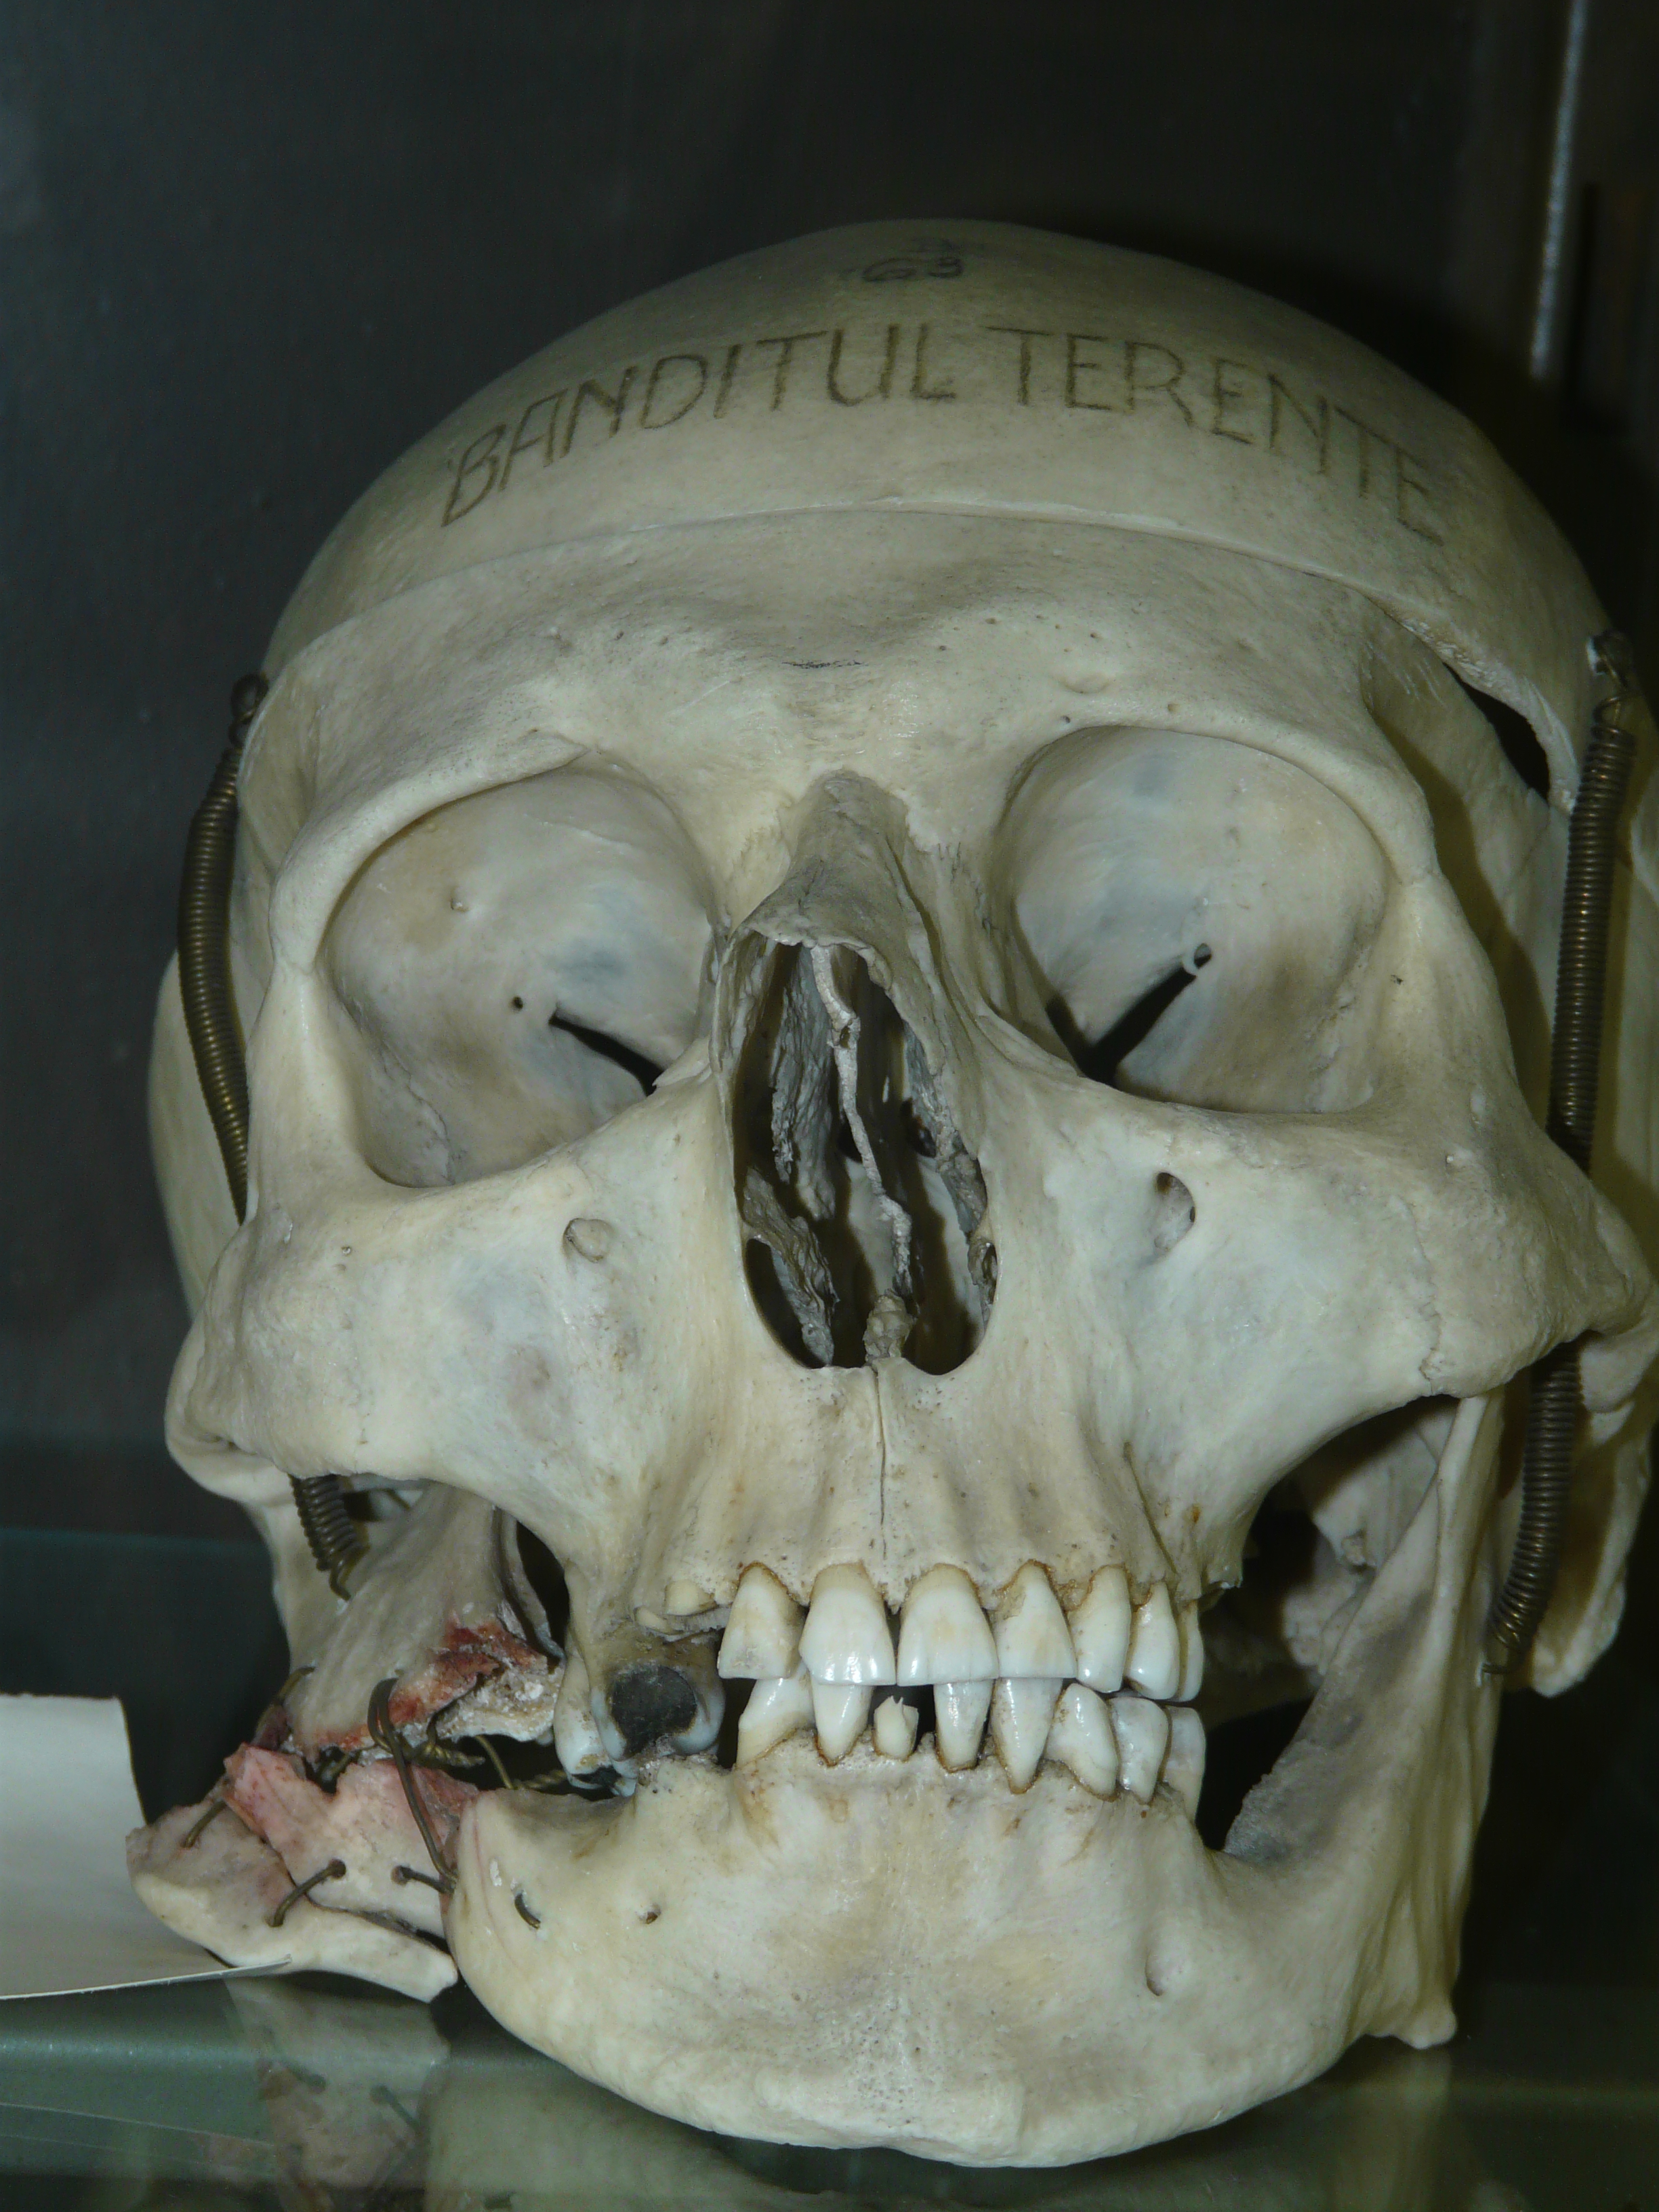 Craniul lui Terente expus la Institutul de Medicină Legală. Se vede (în partea stângă) locul în care a fost împușcat.